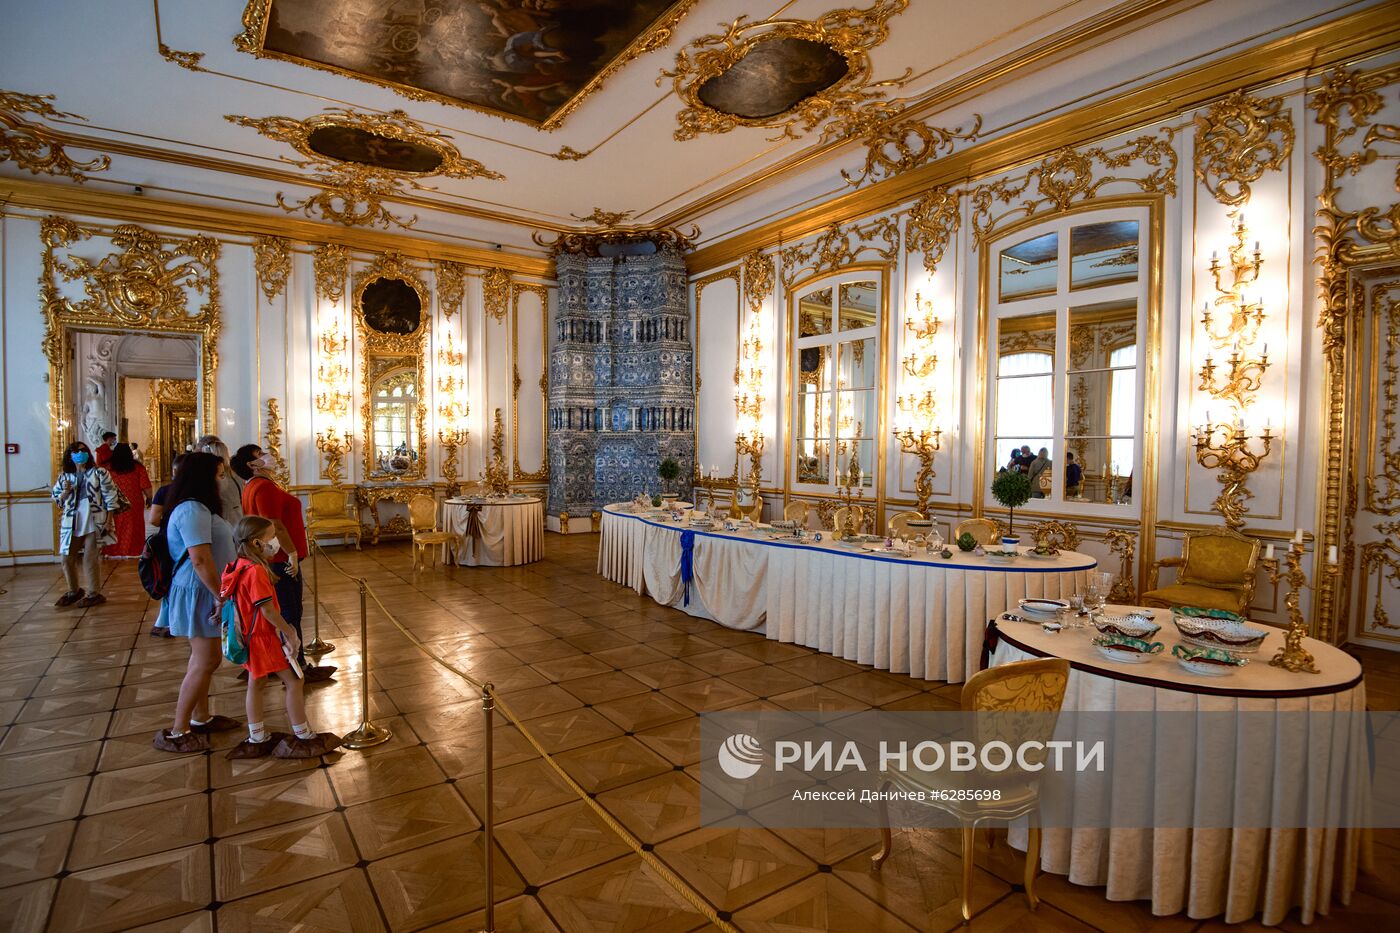 Музей-заповедник "Царское Село" под Петербургом открыл свои парки для посетителей